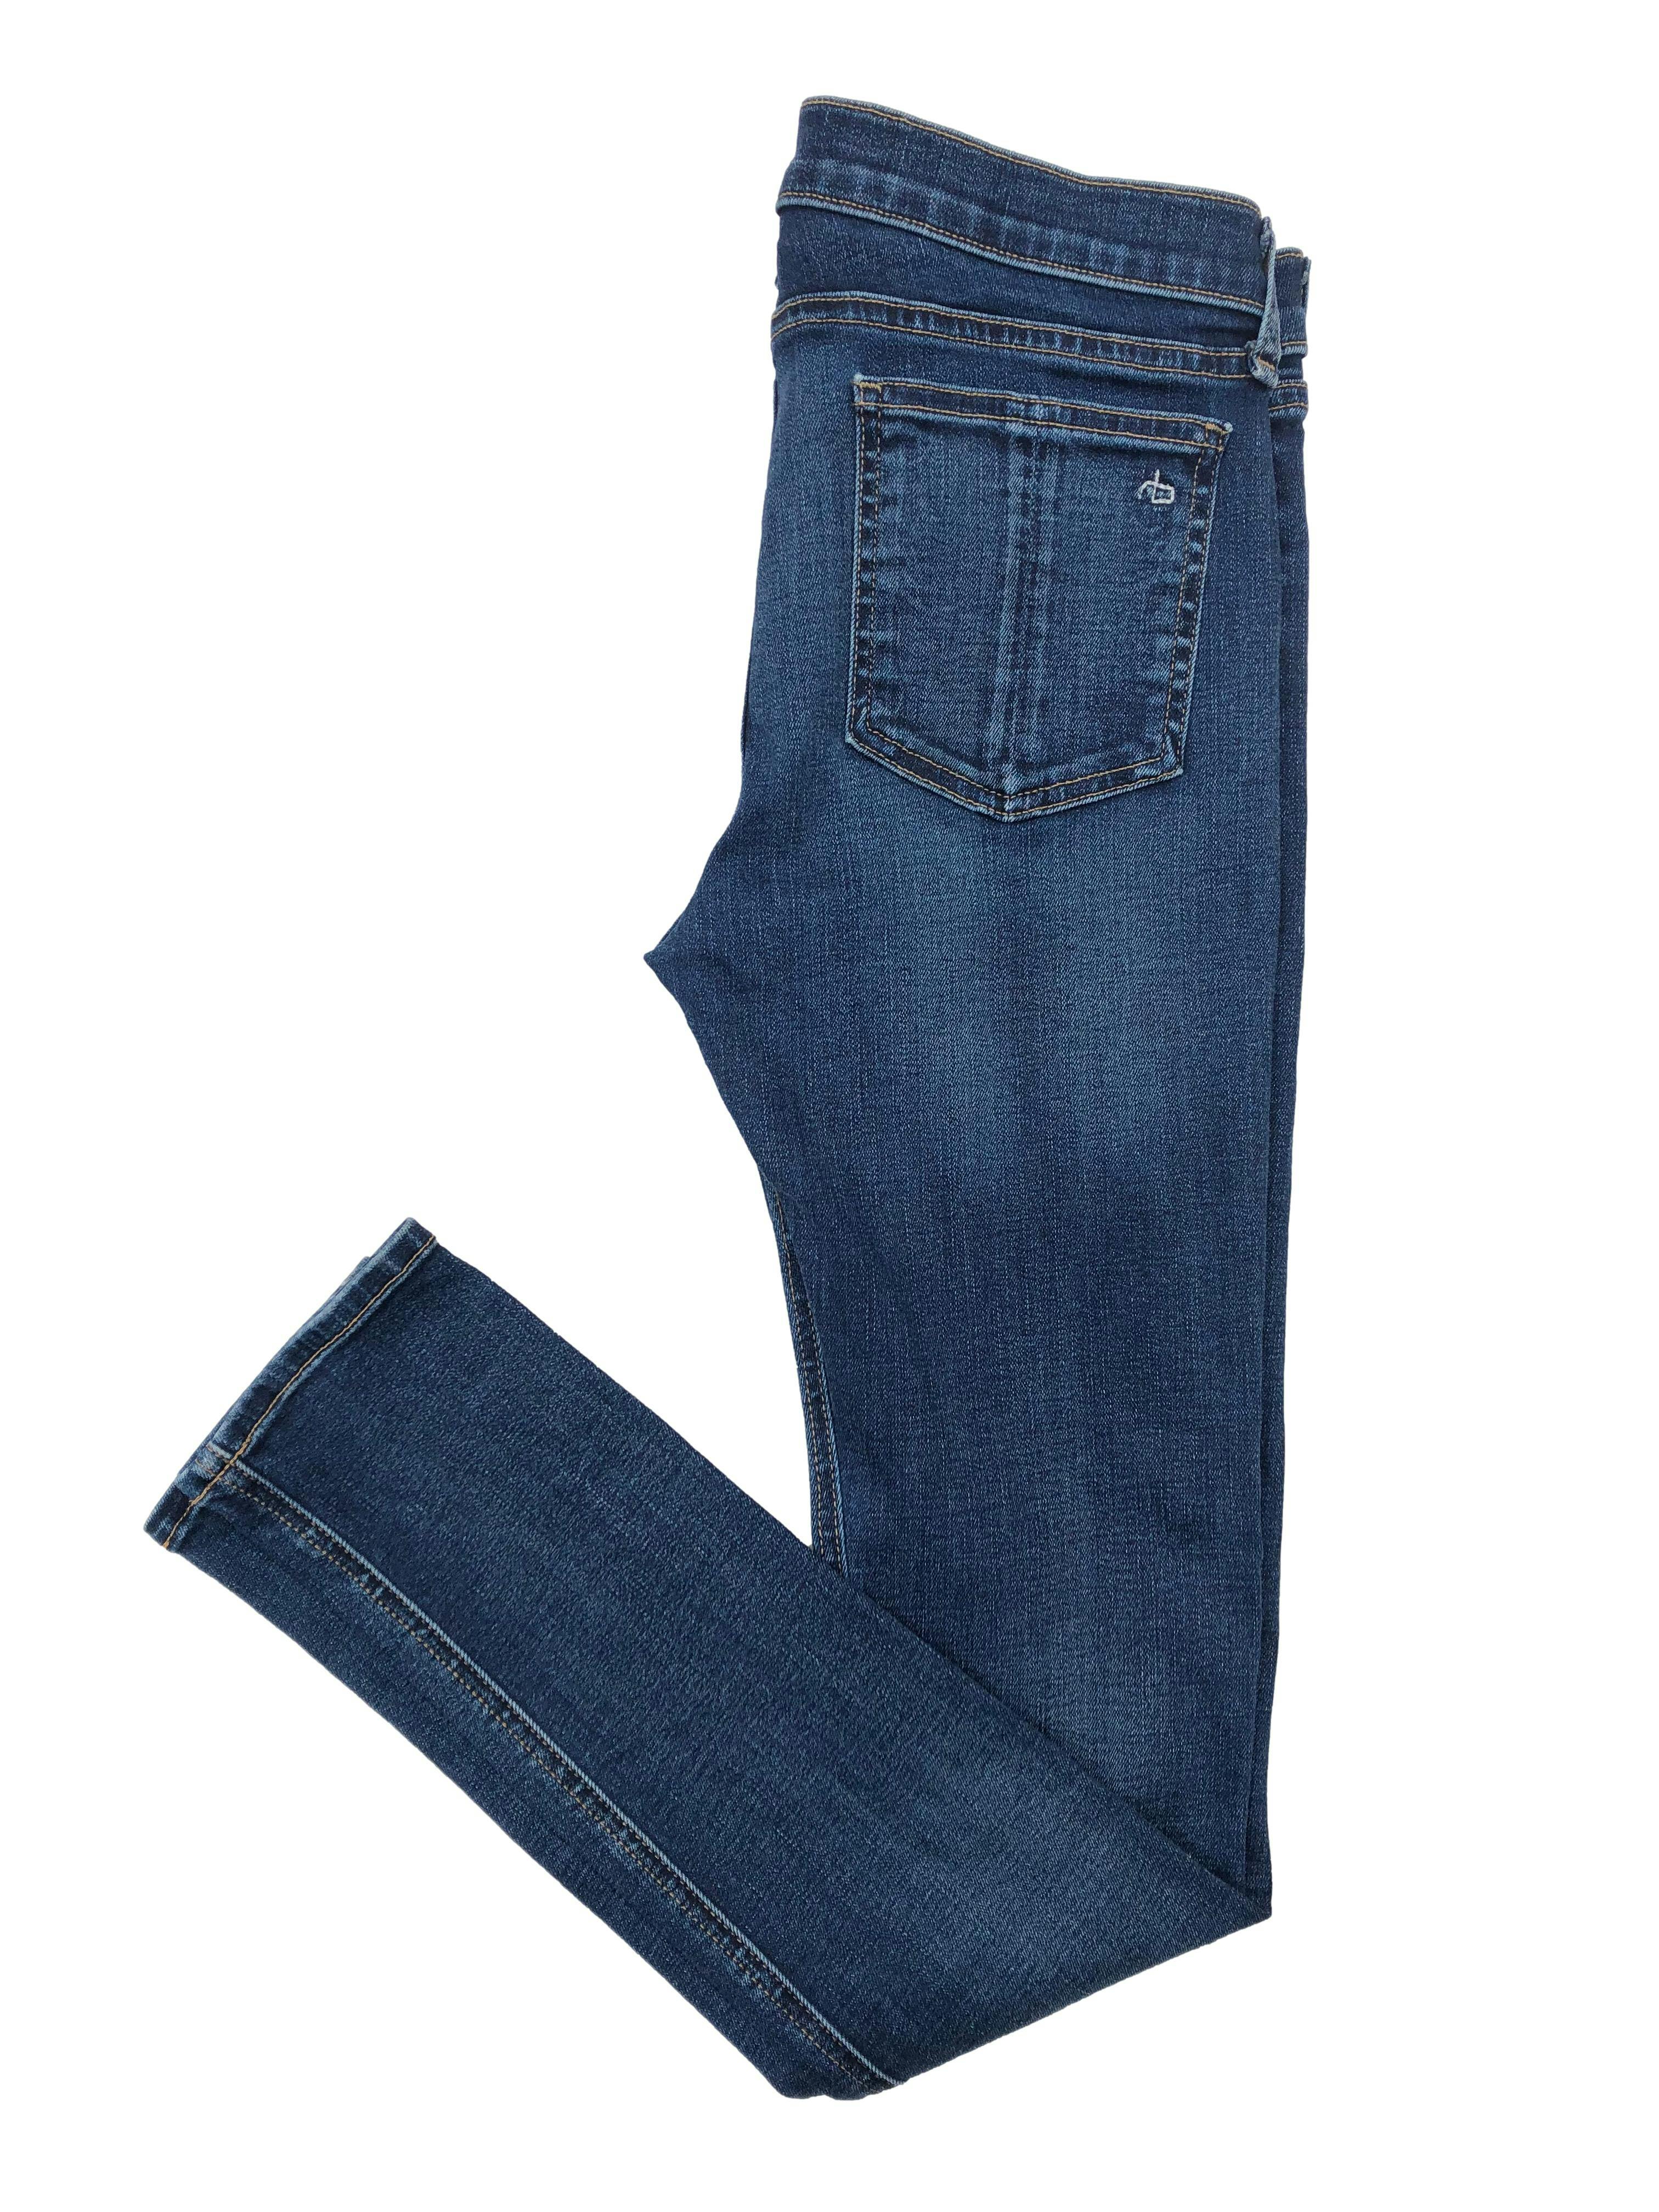 Skinny jean Rag&Bone azul con detalles focalizados. Cintura 72cm Largo 100cm Tiro 23cm. Precio original S/ 600